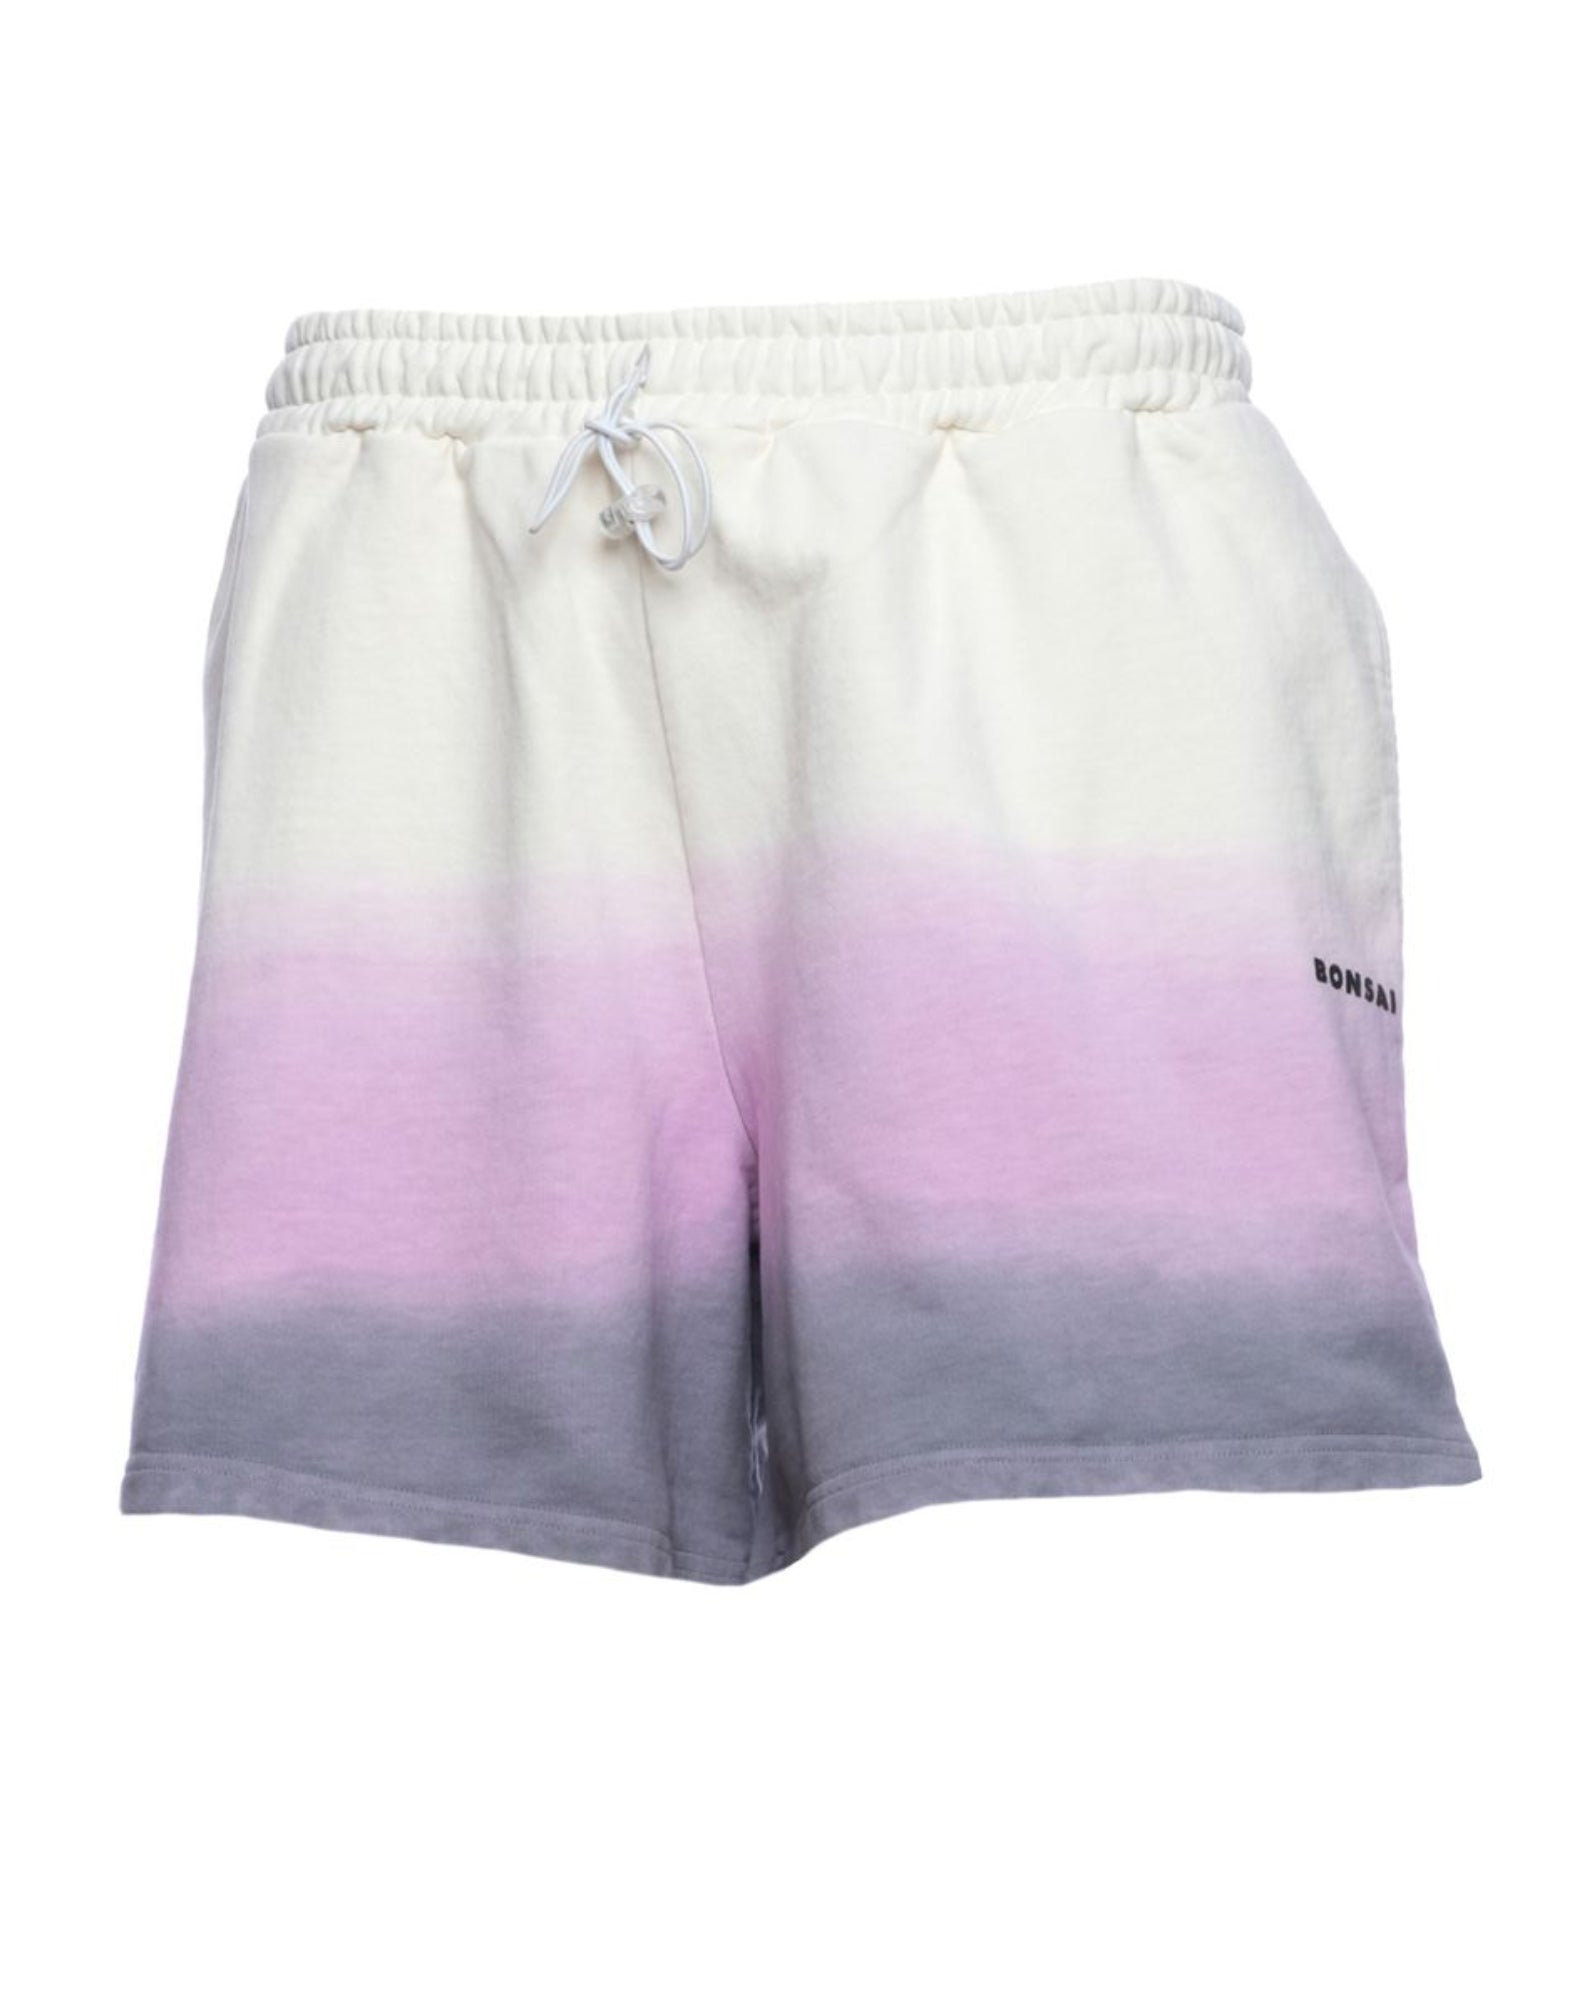 Shorts for men BONSAI PT010 002